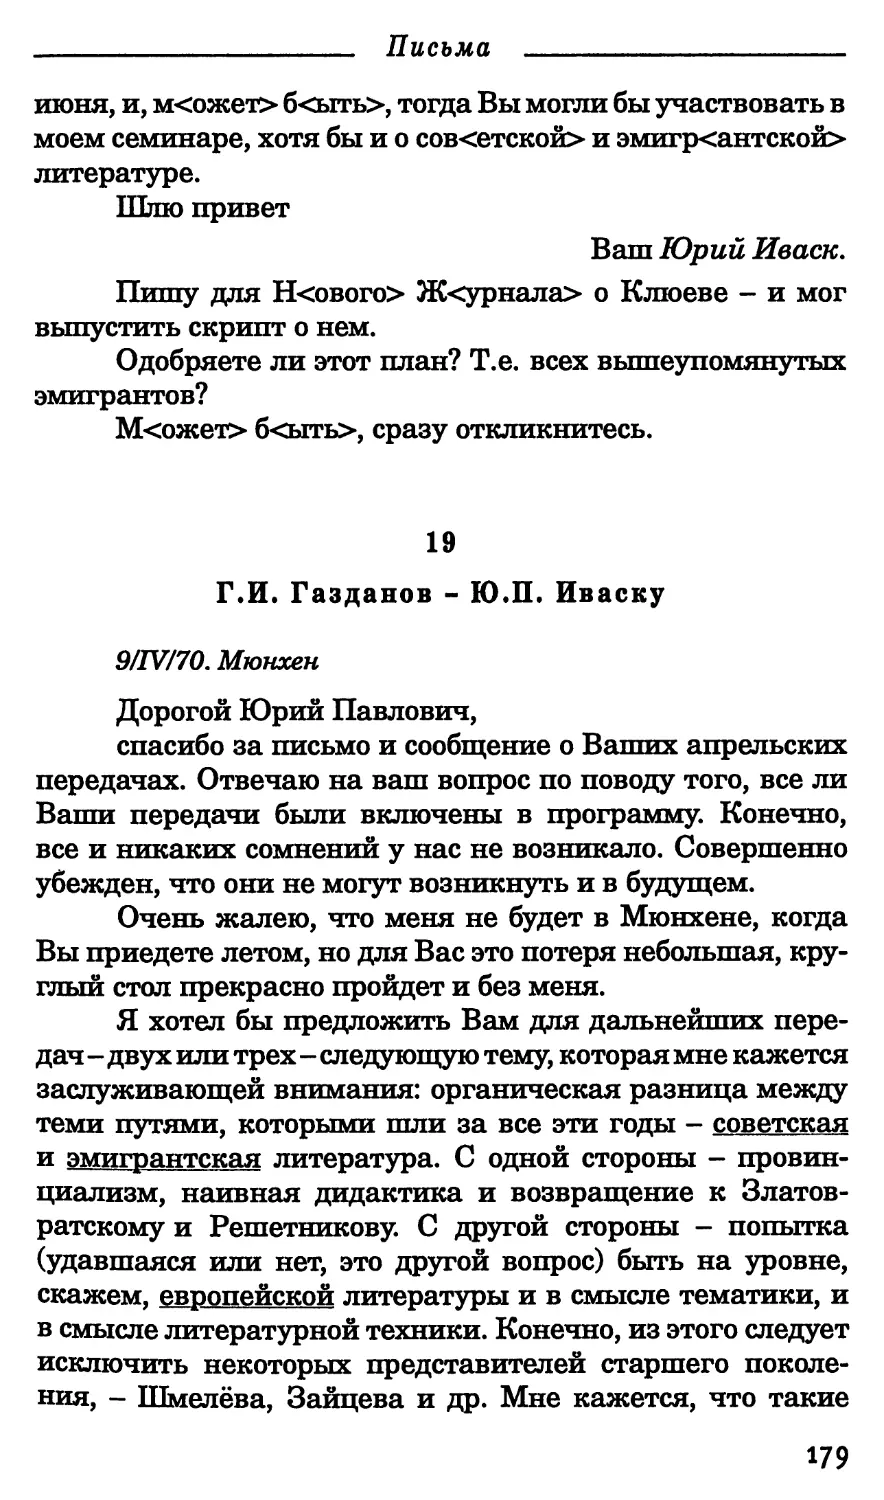 19. Г.И. Газданов - Ю.П. Иваску. 9 апреля 1970 г.